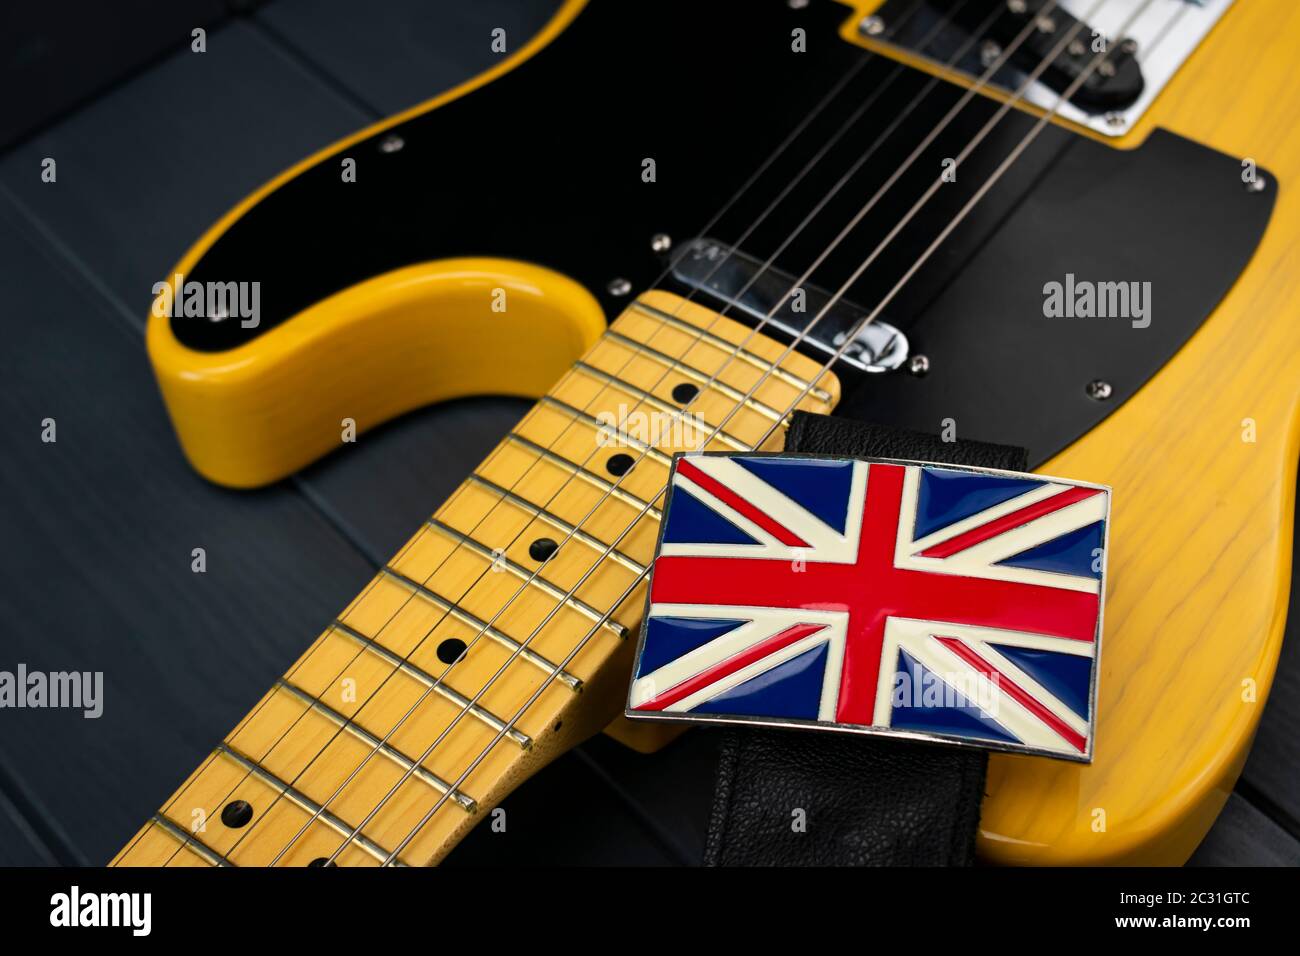 Amerikanische klassische E-Gitarre mit Metallverschluss der britischen Flagge "Union Jack" am Gurt und Hals mit Bünden Stockfoto